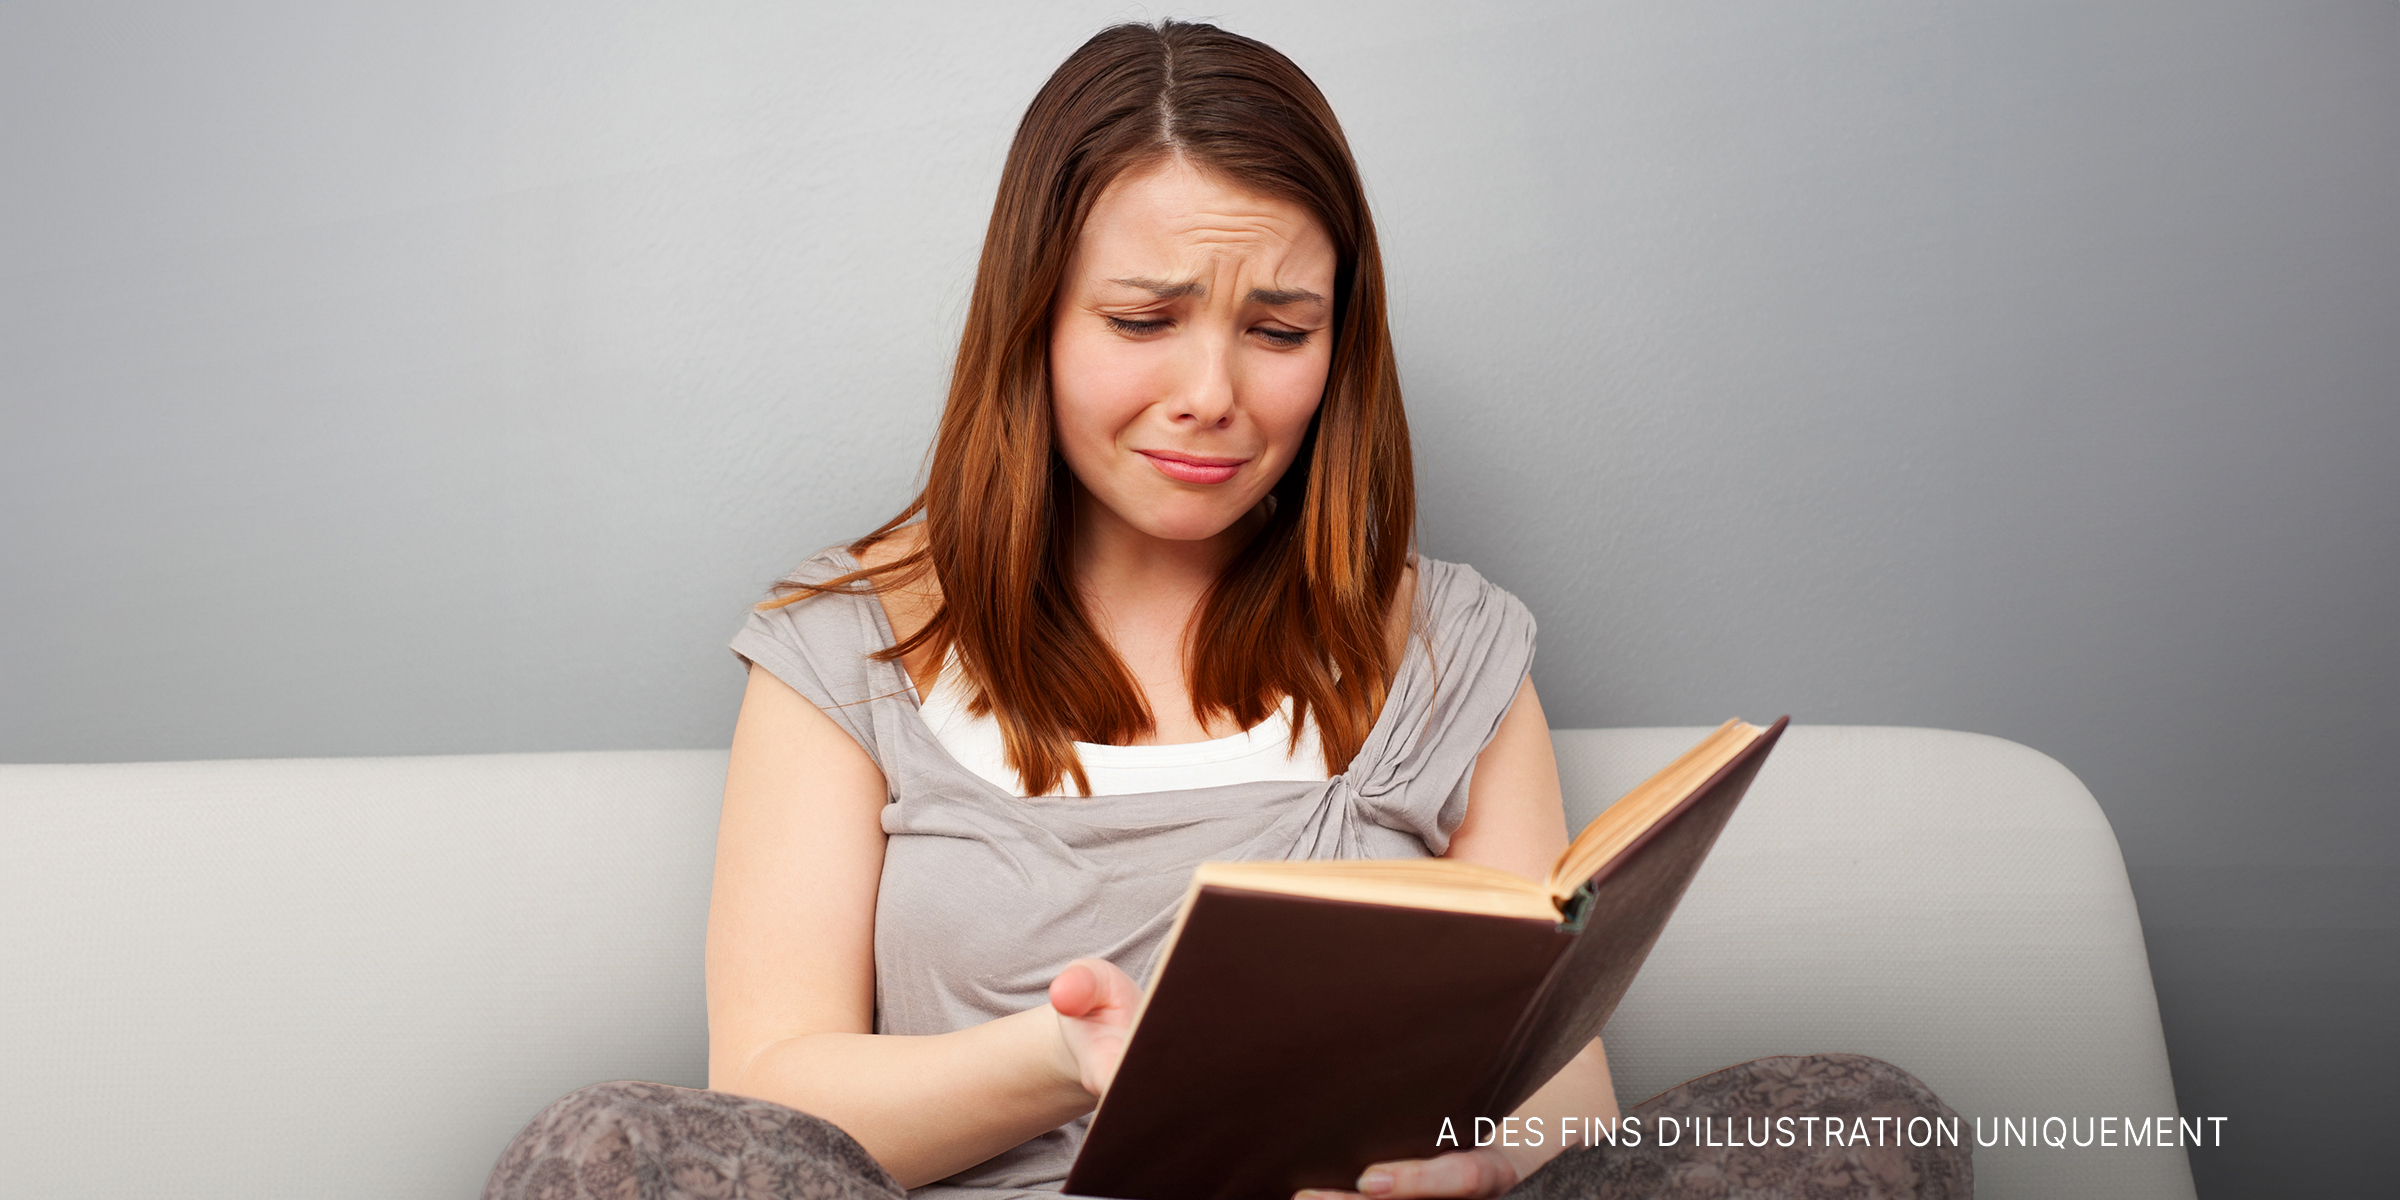 Une femme lisant un livre et pleurant | Source : Shutterstock